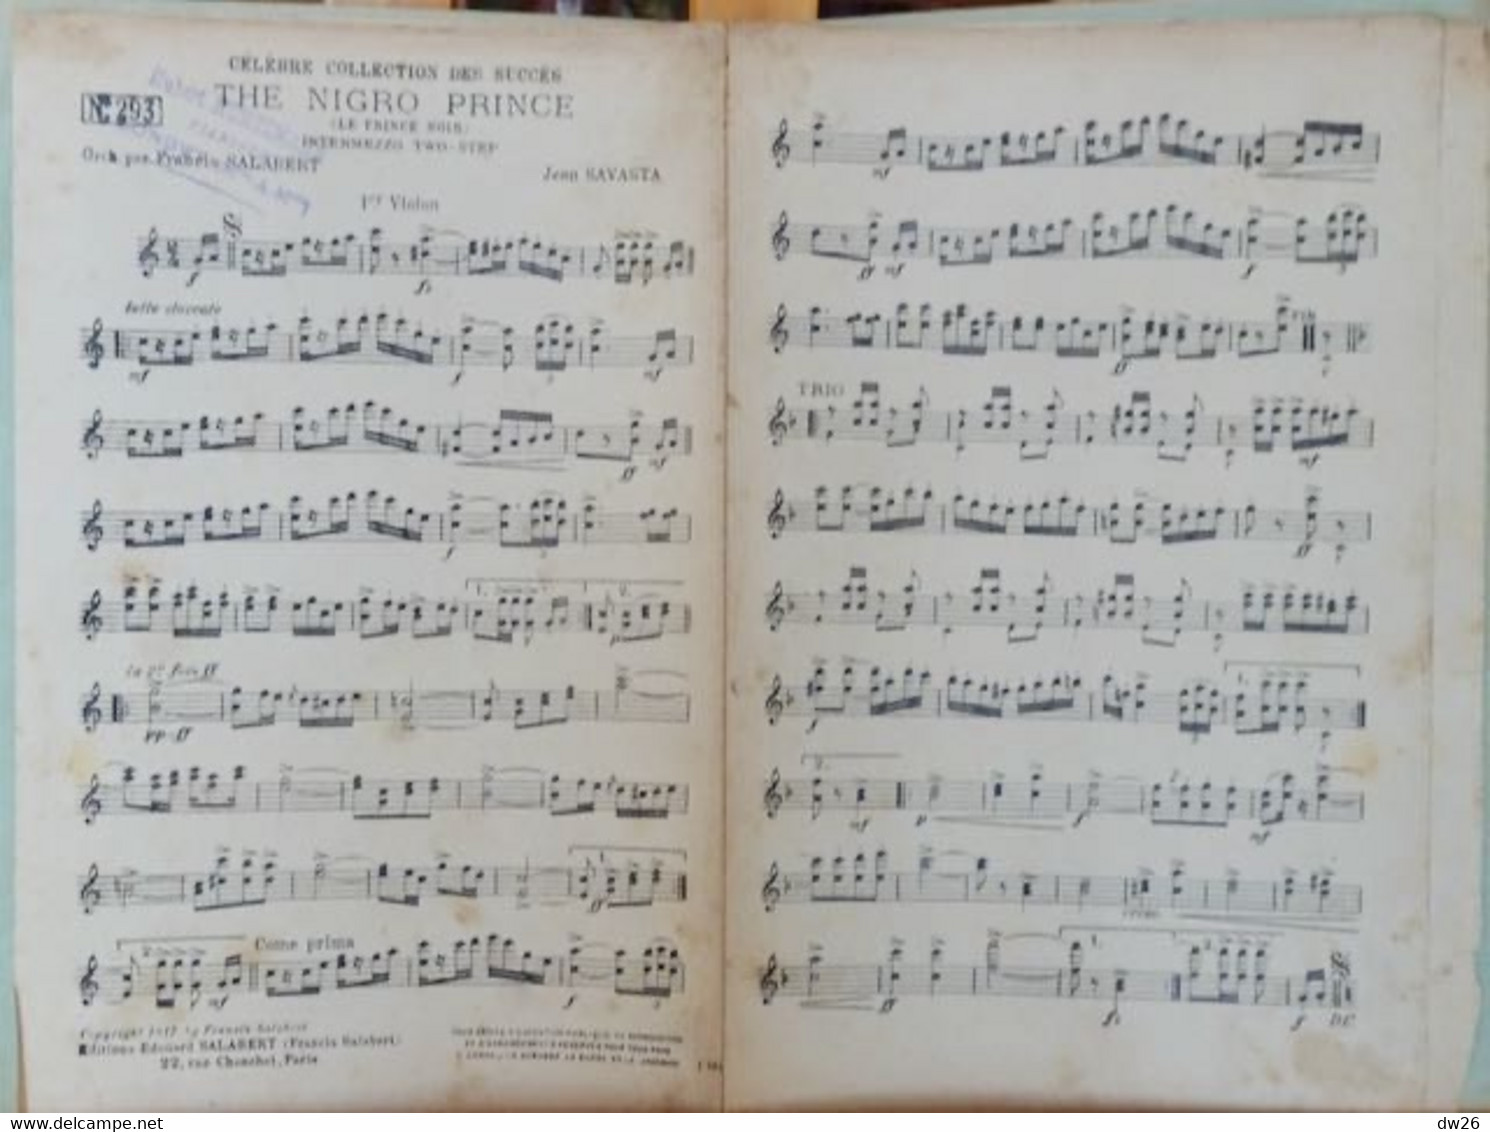 Partition: The Nigro Prince (Le Prince Noir) Intermezzo Two-Step - Francis Salabert N° 293 (piano, Violon, Violoncelle) - Scores & Partitions